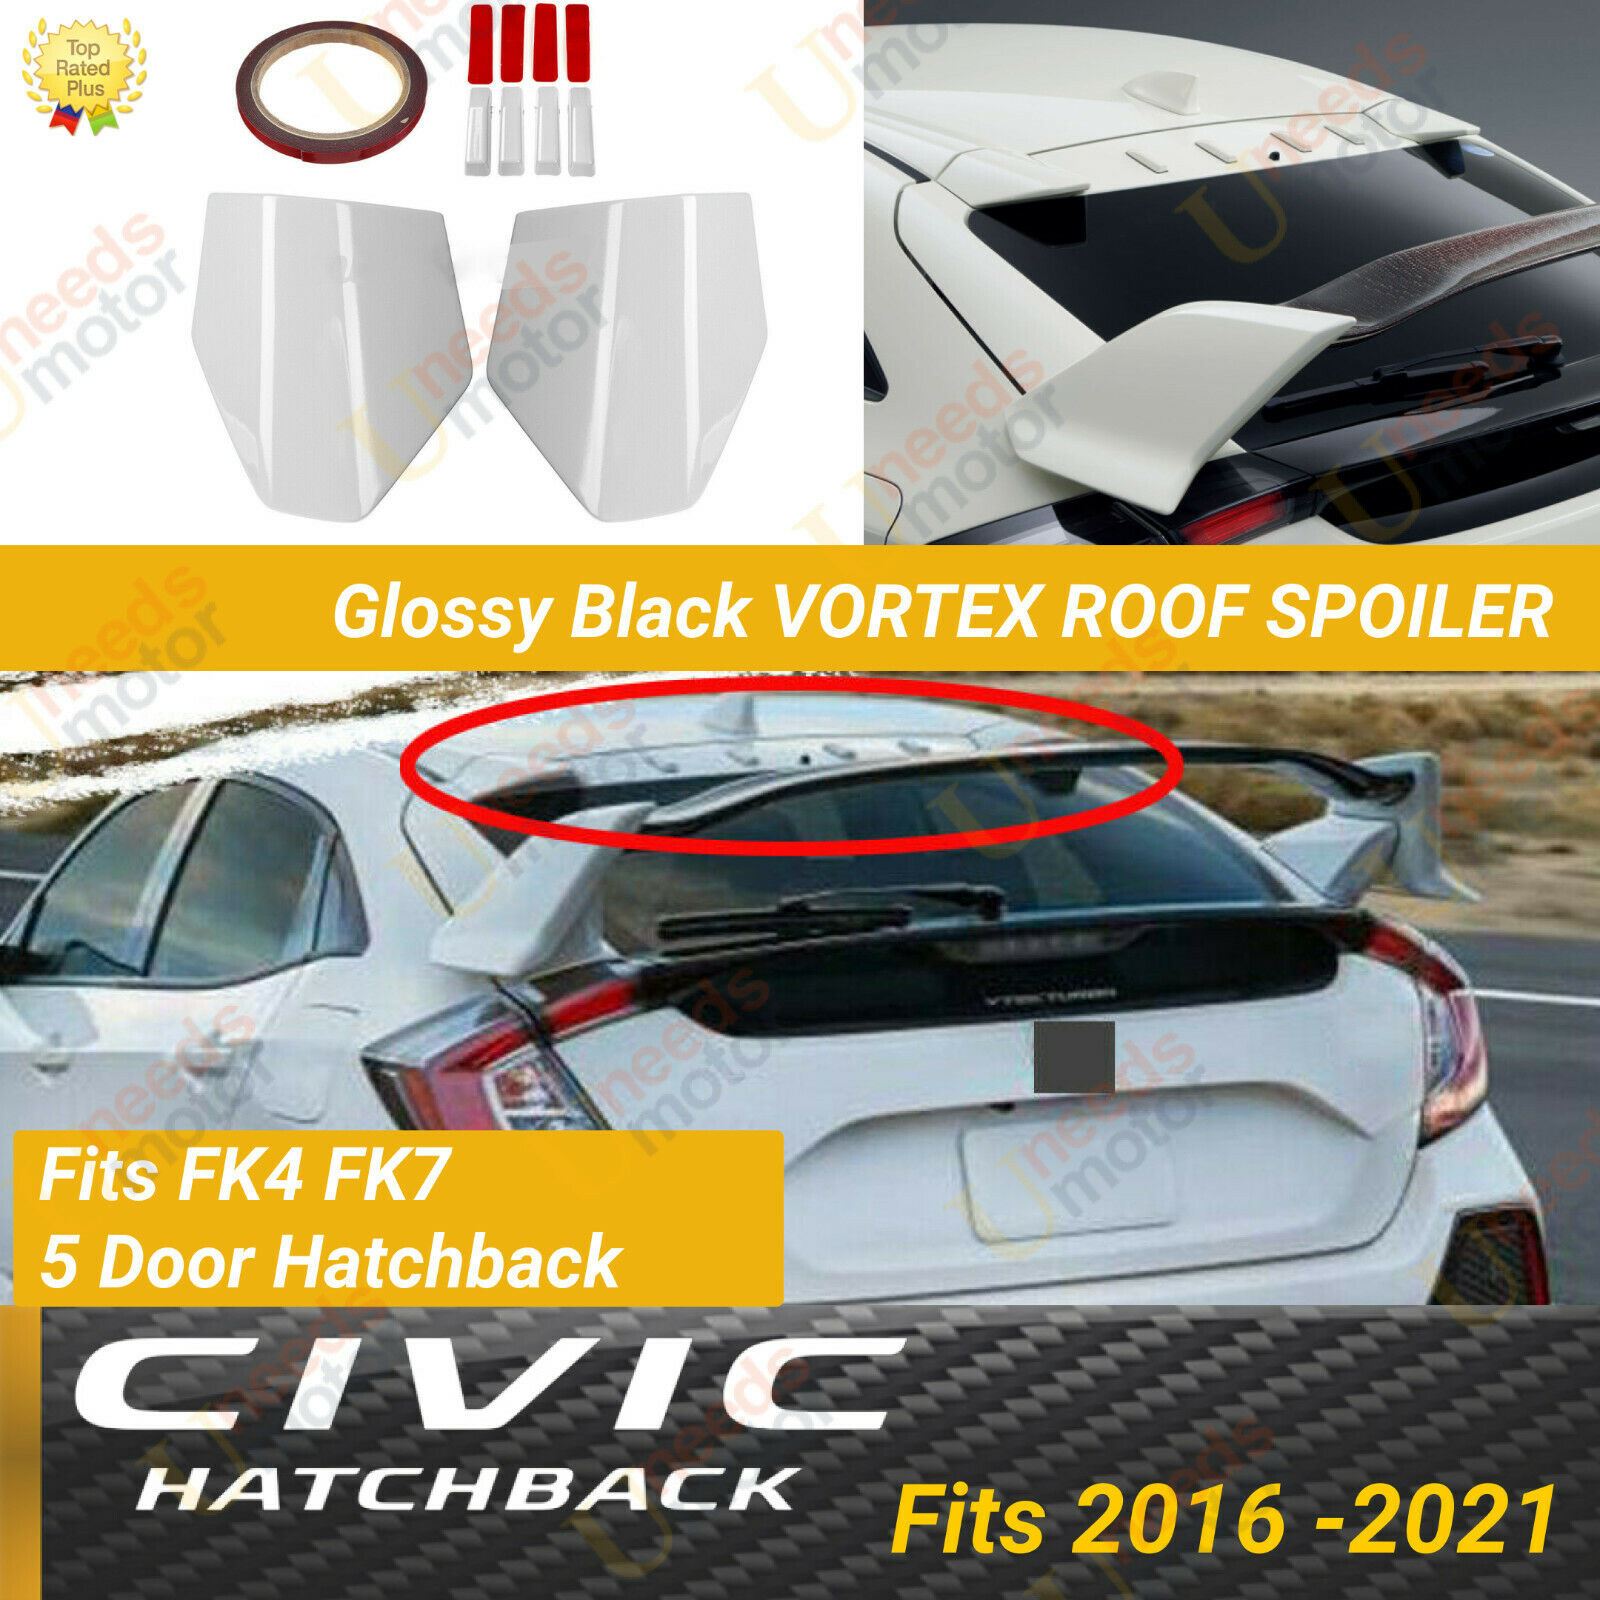 Alerón de techo para ventana Honda CIVIC FK4 FK7 5DR Hatchback Type R VORTEX 2016-2021 (blanco)